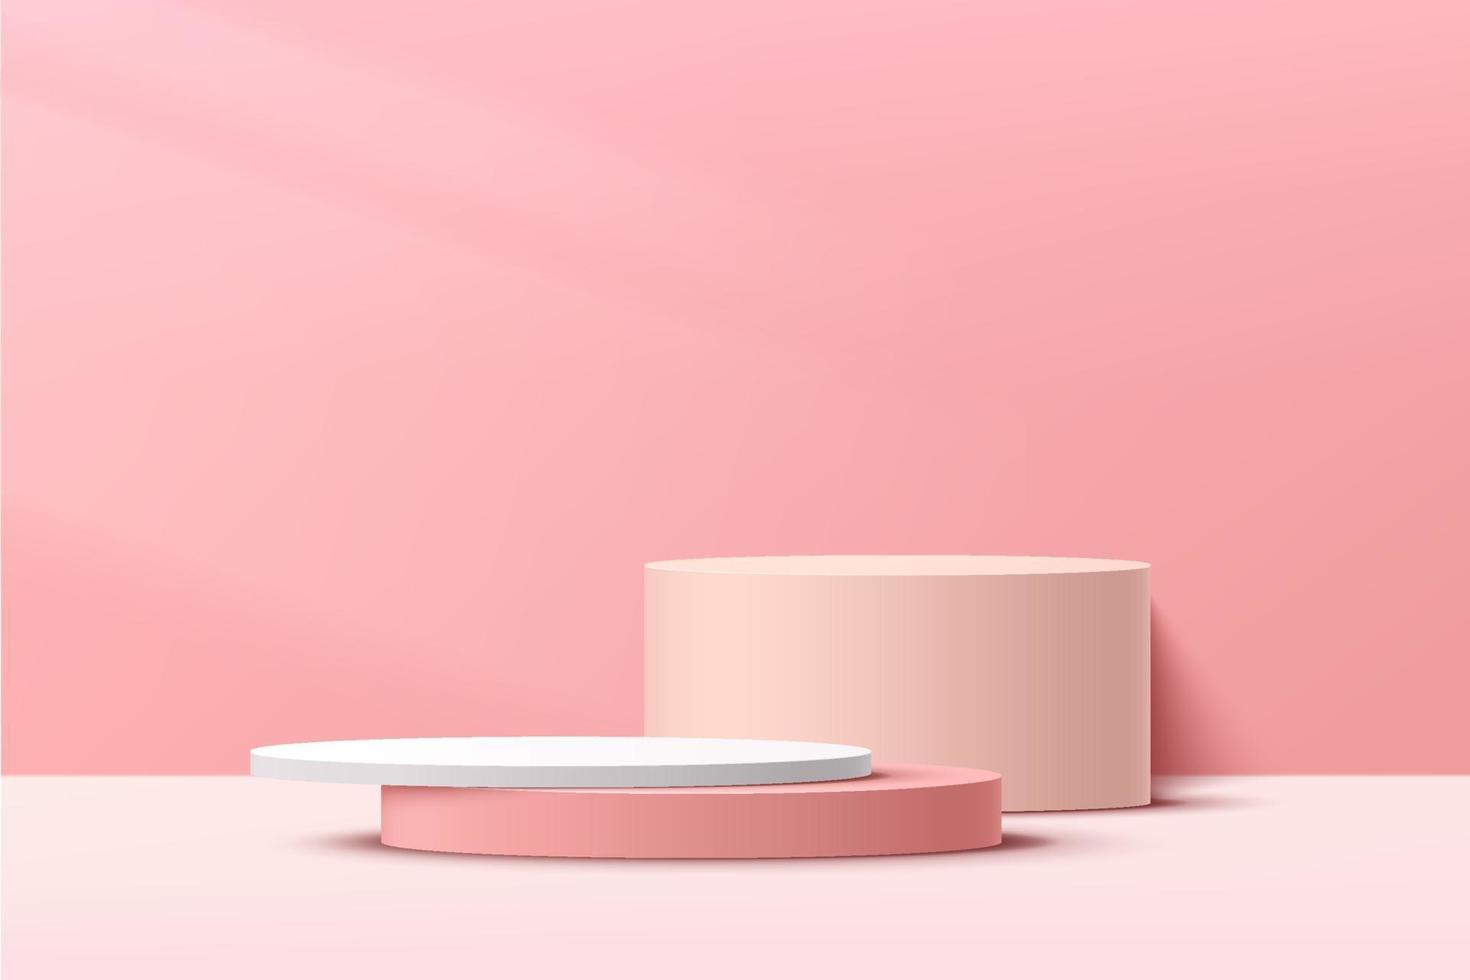 podium de piédestal de cylindre rose et blanc abstrait 3d avec scène rose. vecteur